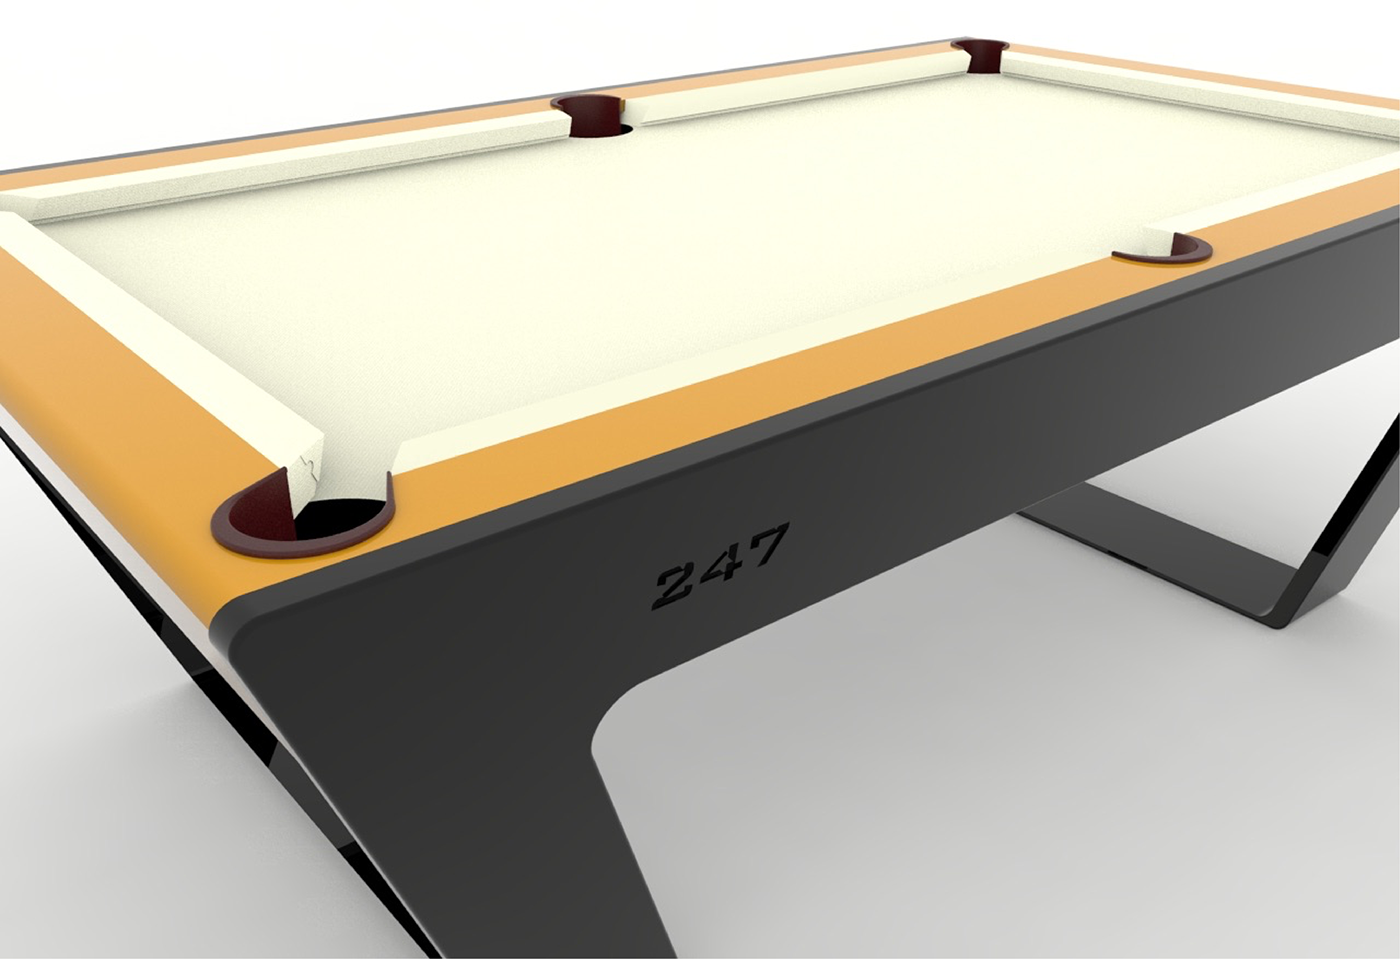 3dmodeling porsche design Pool Table Solidworks rendering